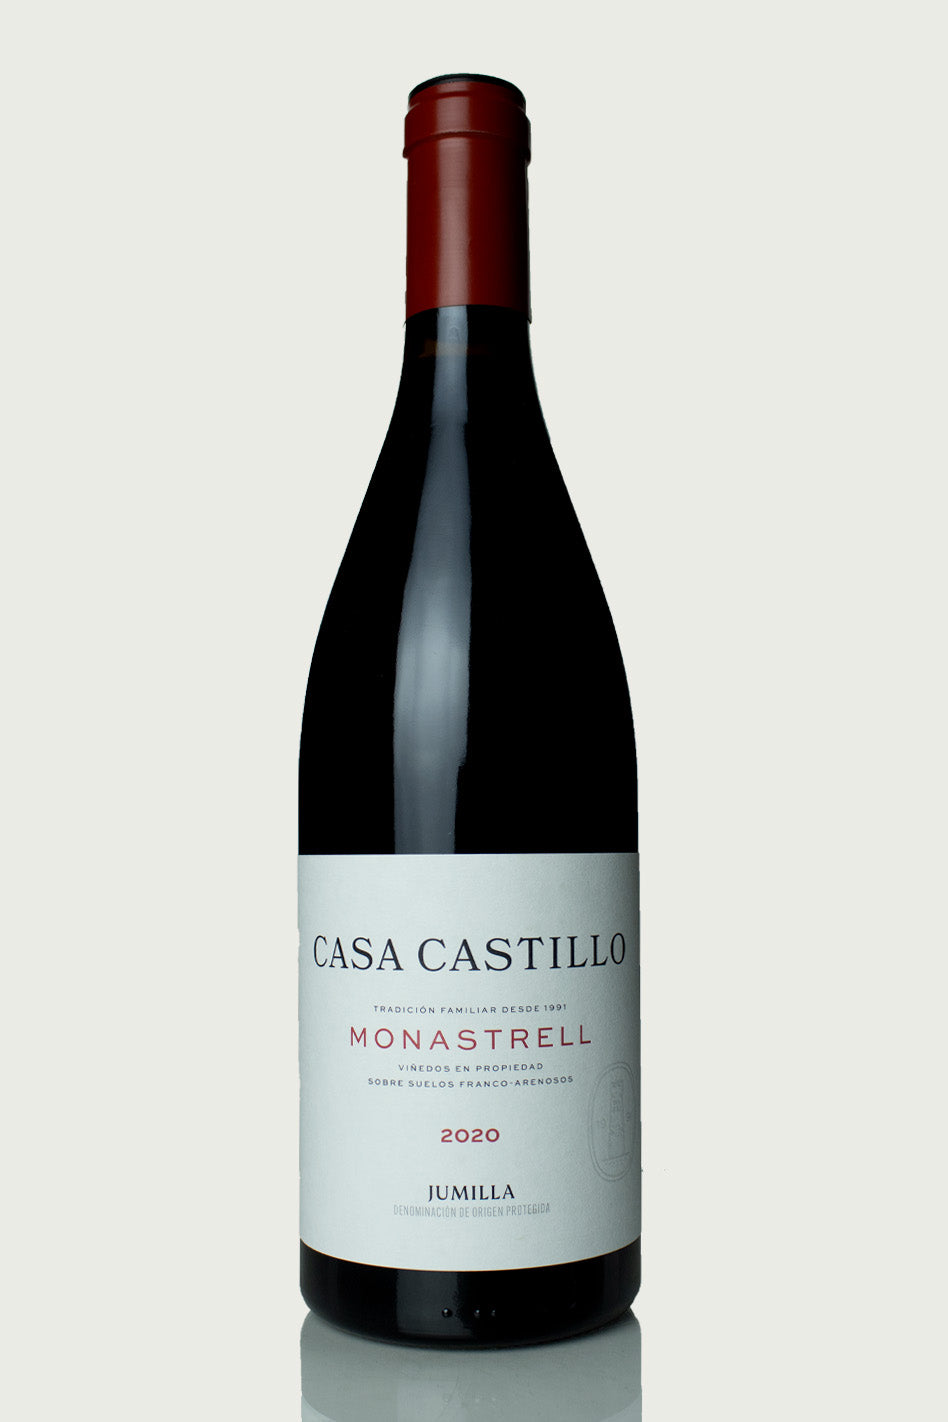 Casa Castillo Monastrell 2021